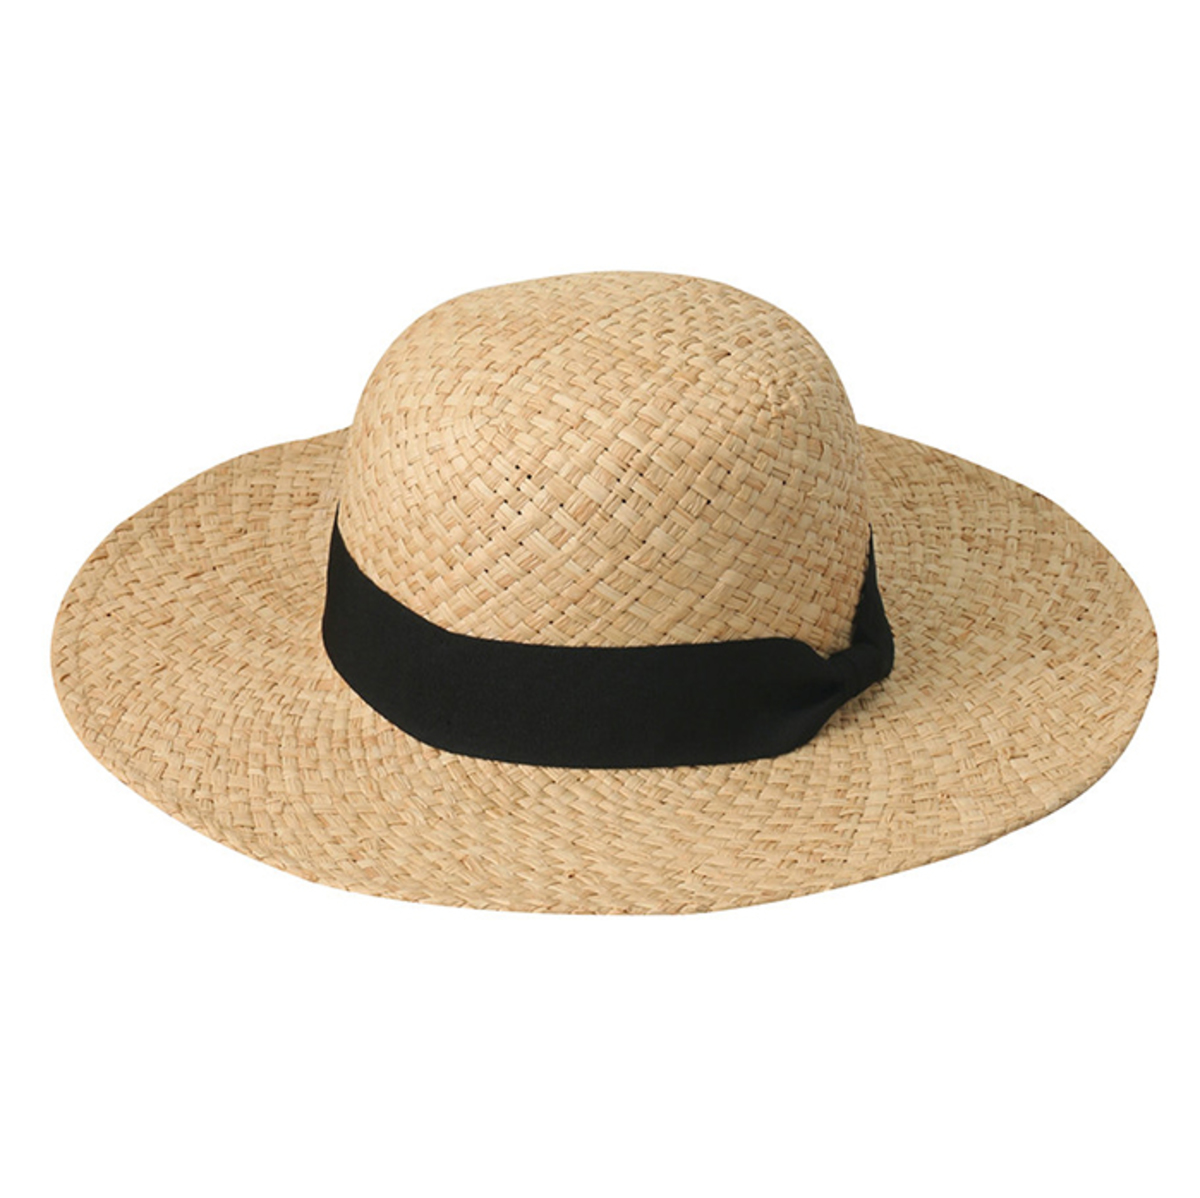 1万円台まで】紫外線対策に麦わら帽子。日焼け予防は近所でも